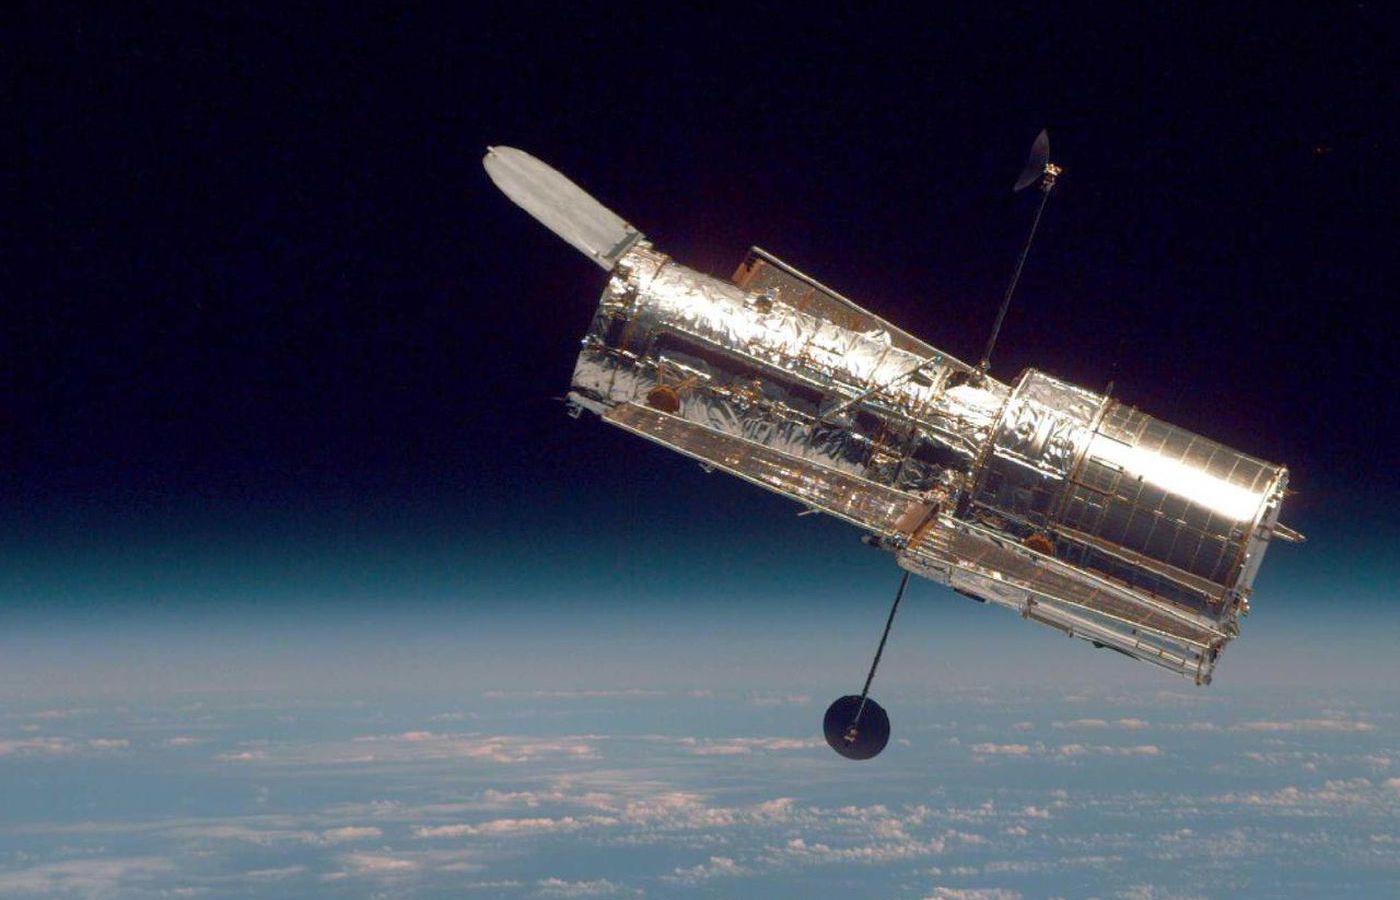 L'Hubble fotografato dallo Space Shuttle Discovery. Credits: NASA.